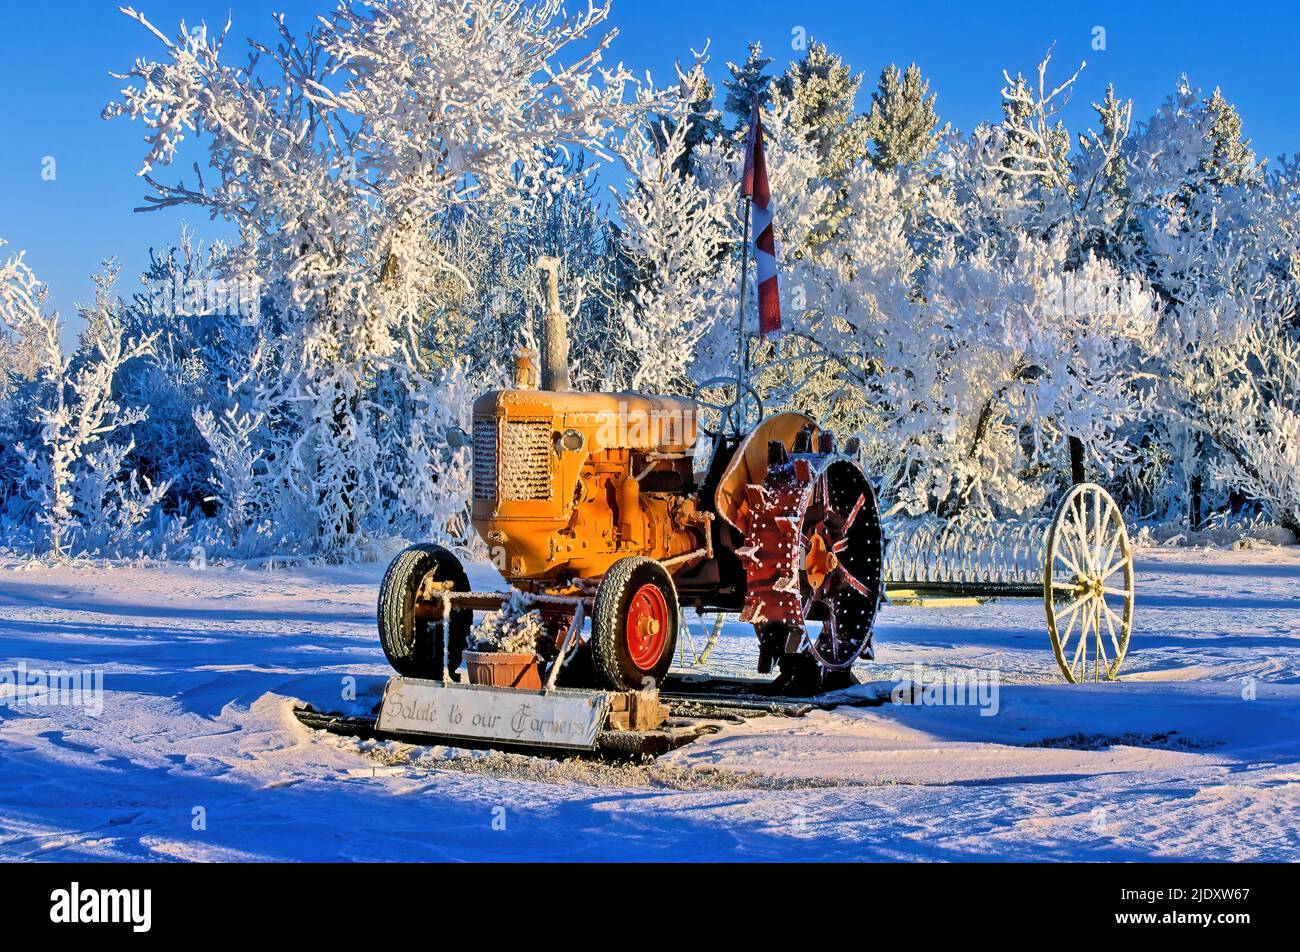 Un antiguo tractor agrícola Moline de Minneapolis aparcado como una pieza decorativa en la pesada helada del norte de Alberta Canadá. Foto de stock